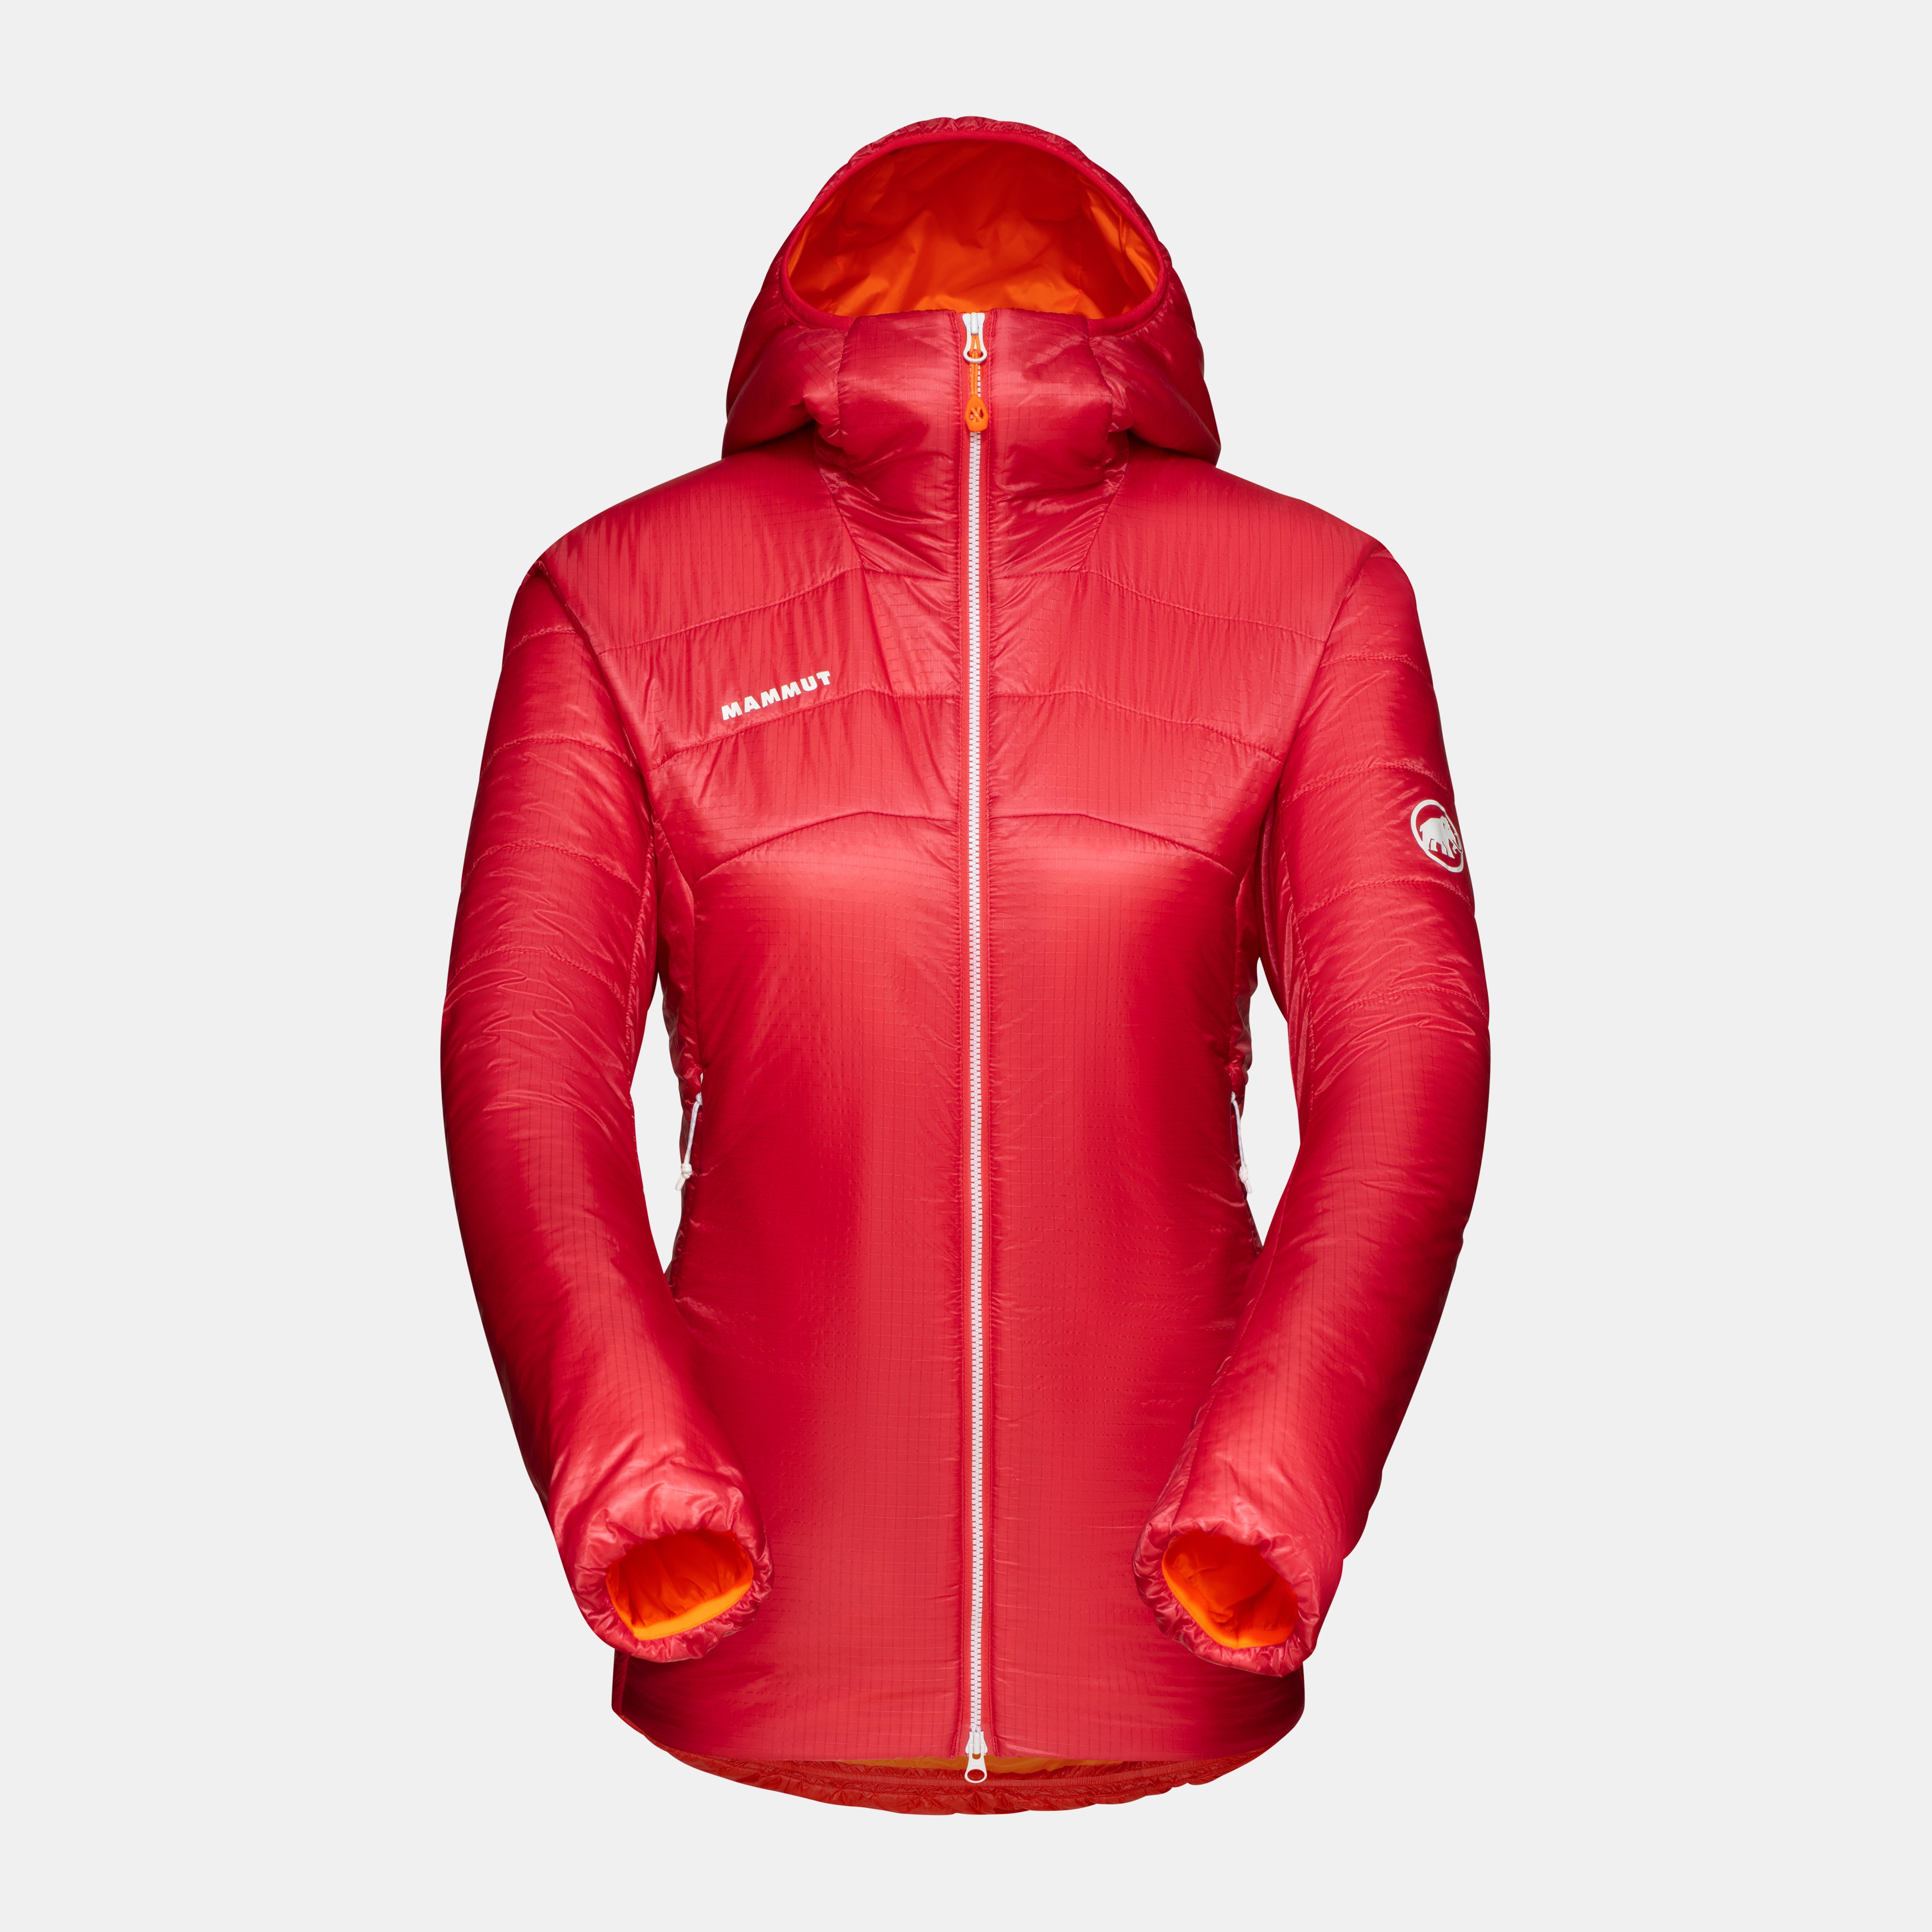 Eigerjoch Light IN Hooded Jacket Women product image